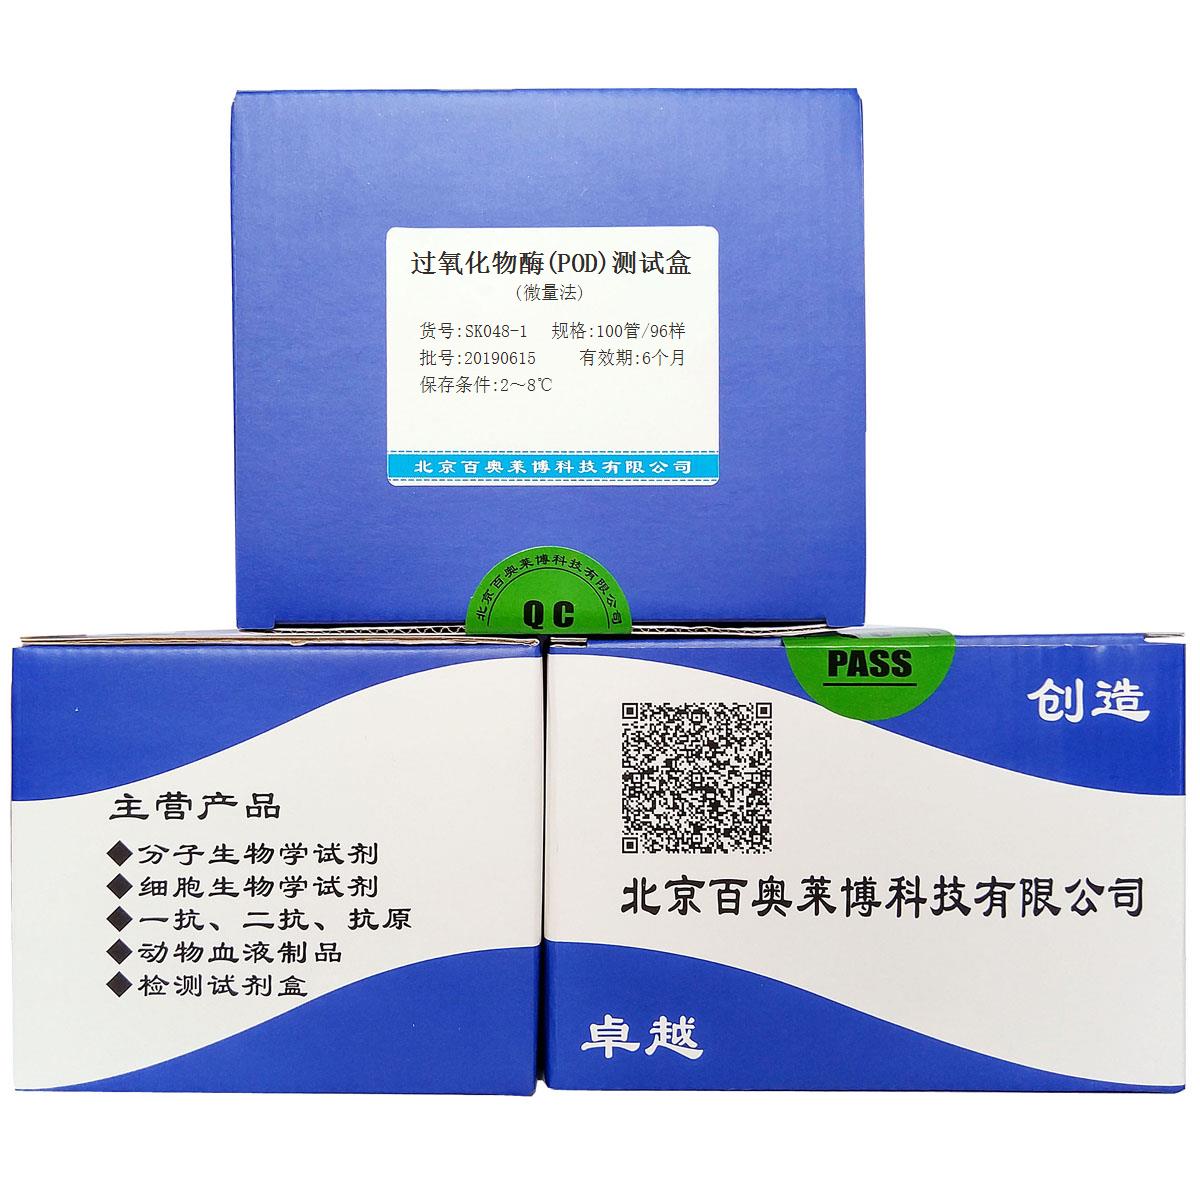 过氧化物酶(POD)测试盒(微量法)北京品牌